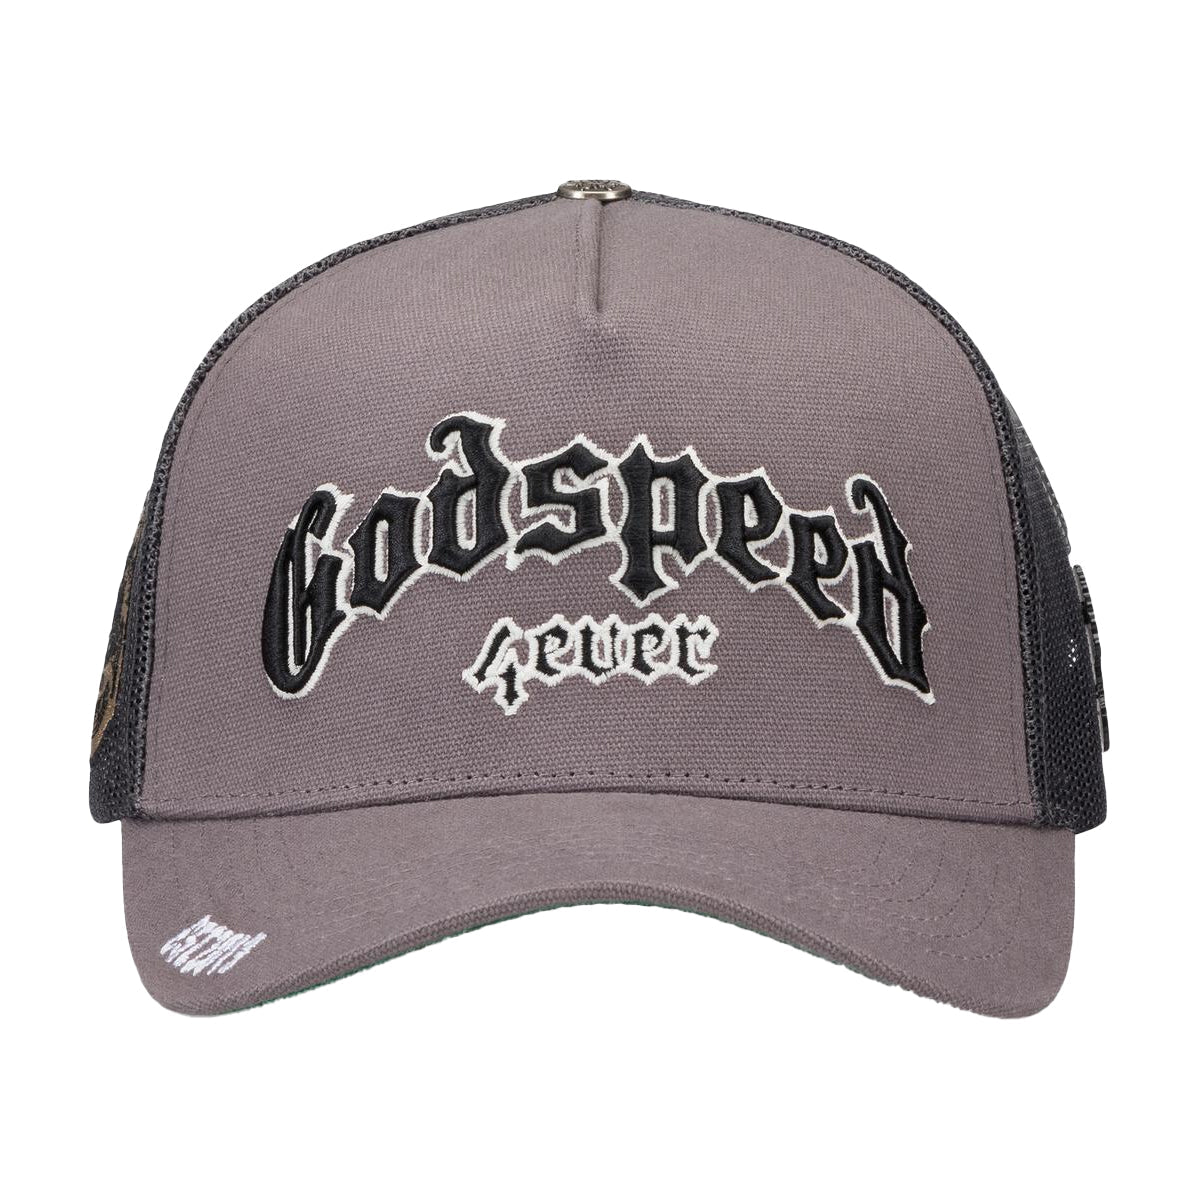 Godspeed GS Forever Trucker Hat Grey/White/Black